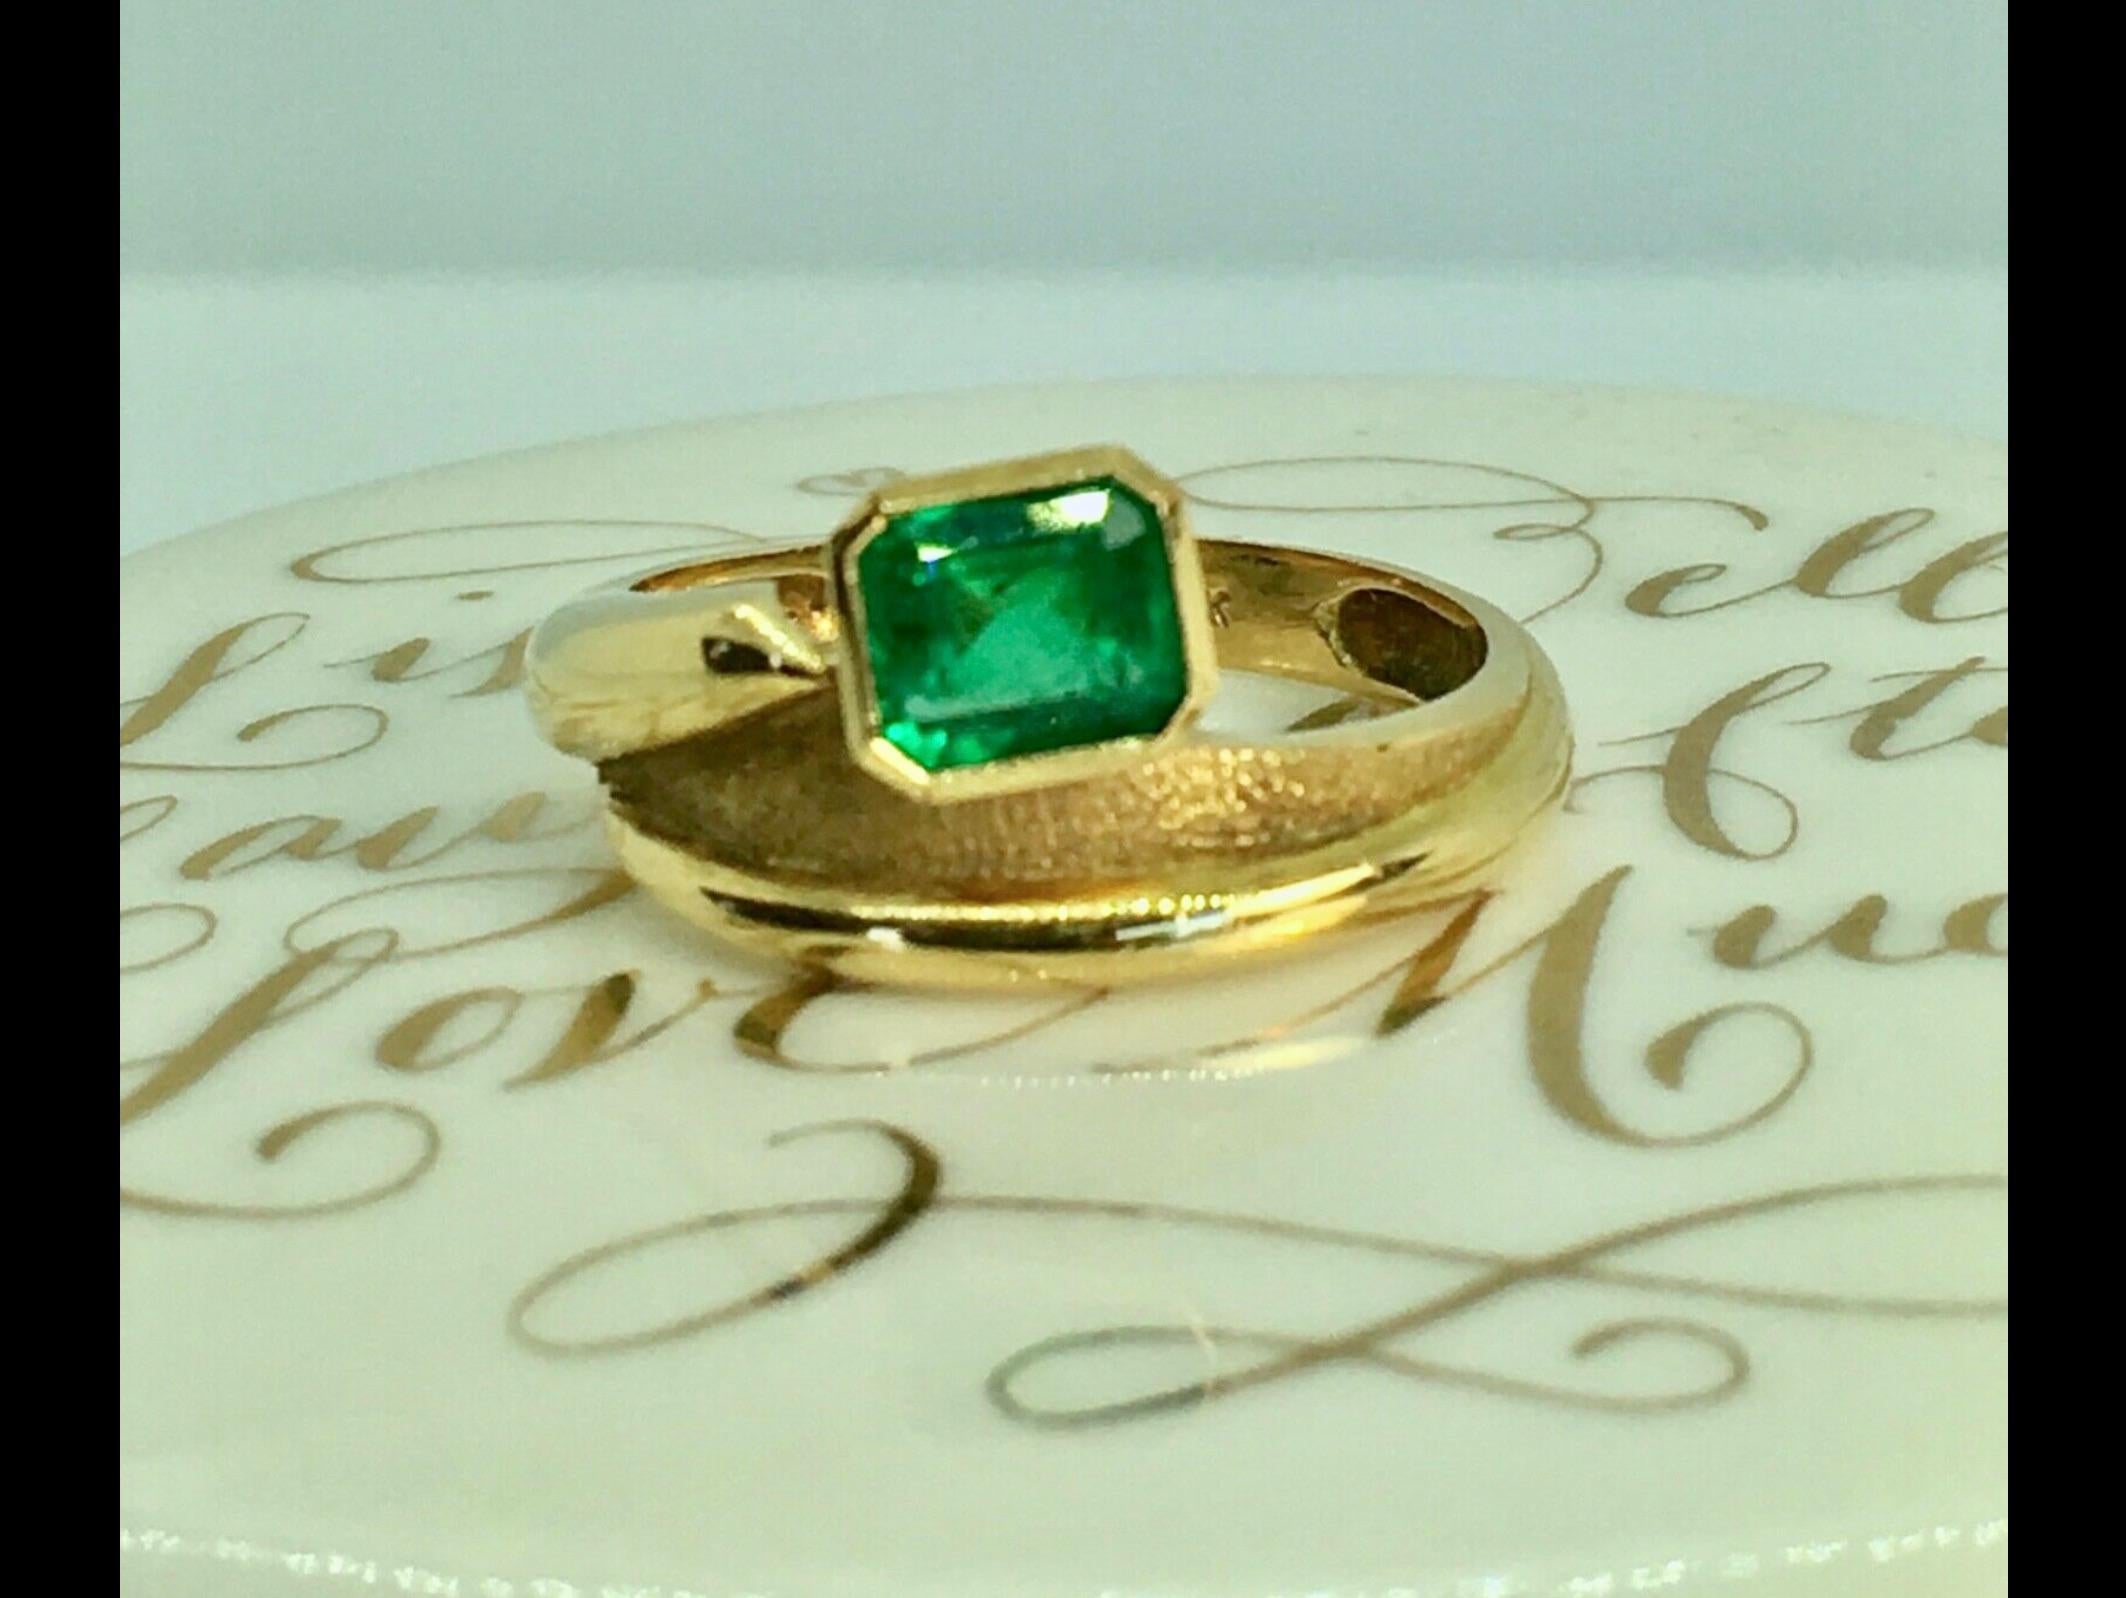 Estate Solitaire Ring Fine Natural Colombian Emerald Emerald Cut 0.80 Carat
Poids 4,5g
Vert foncé moyen vif
Taille 6
En excellent état.